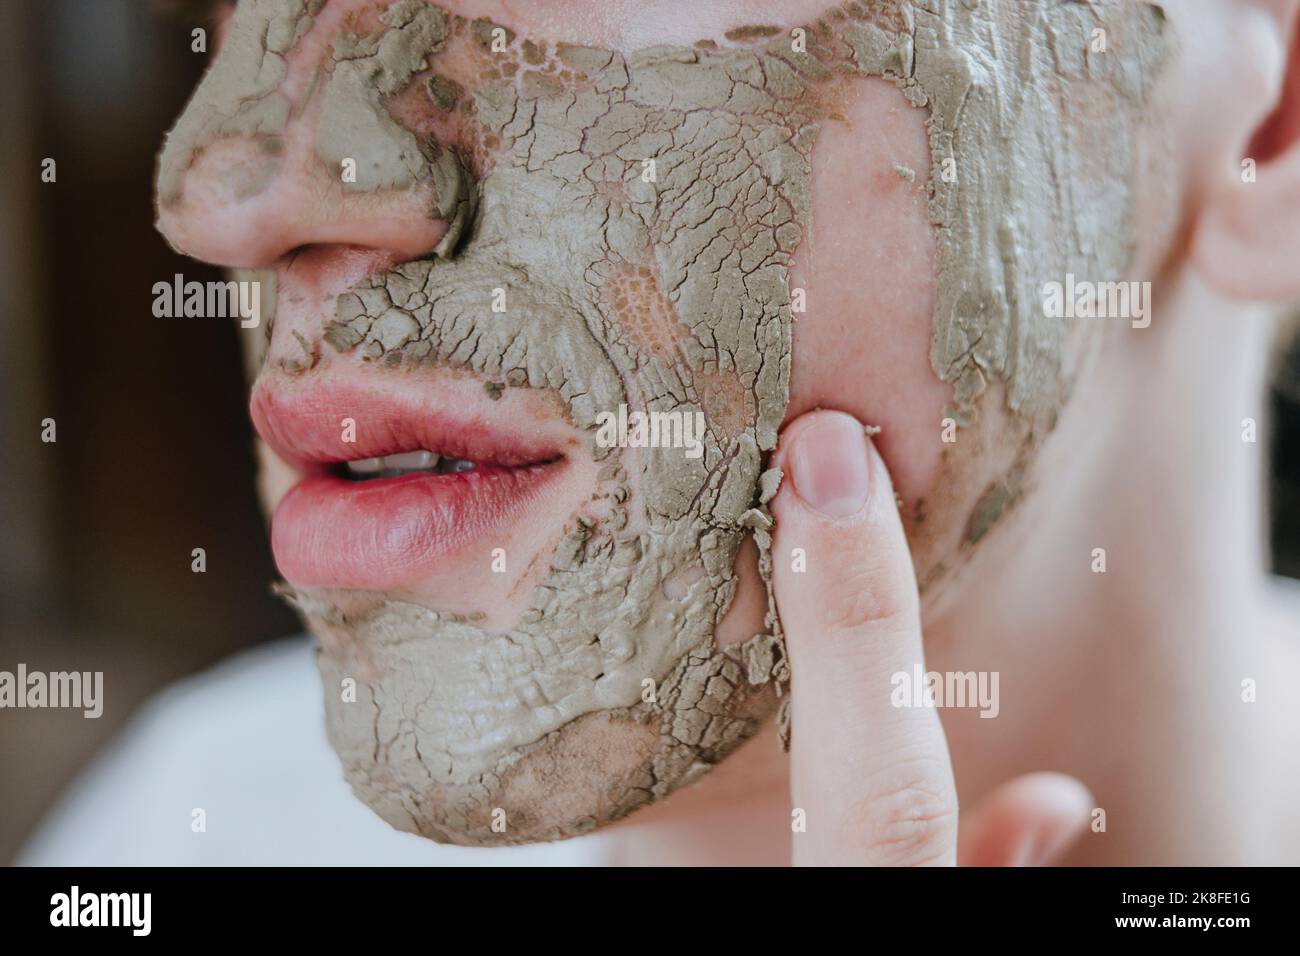 Maquilleur supprimant le masque facial avec le doigt Banque D'Images